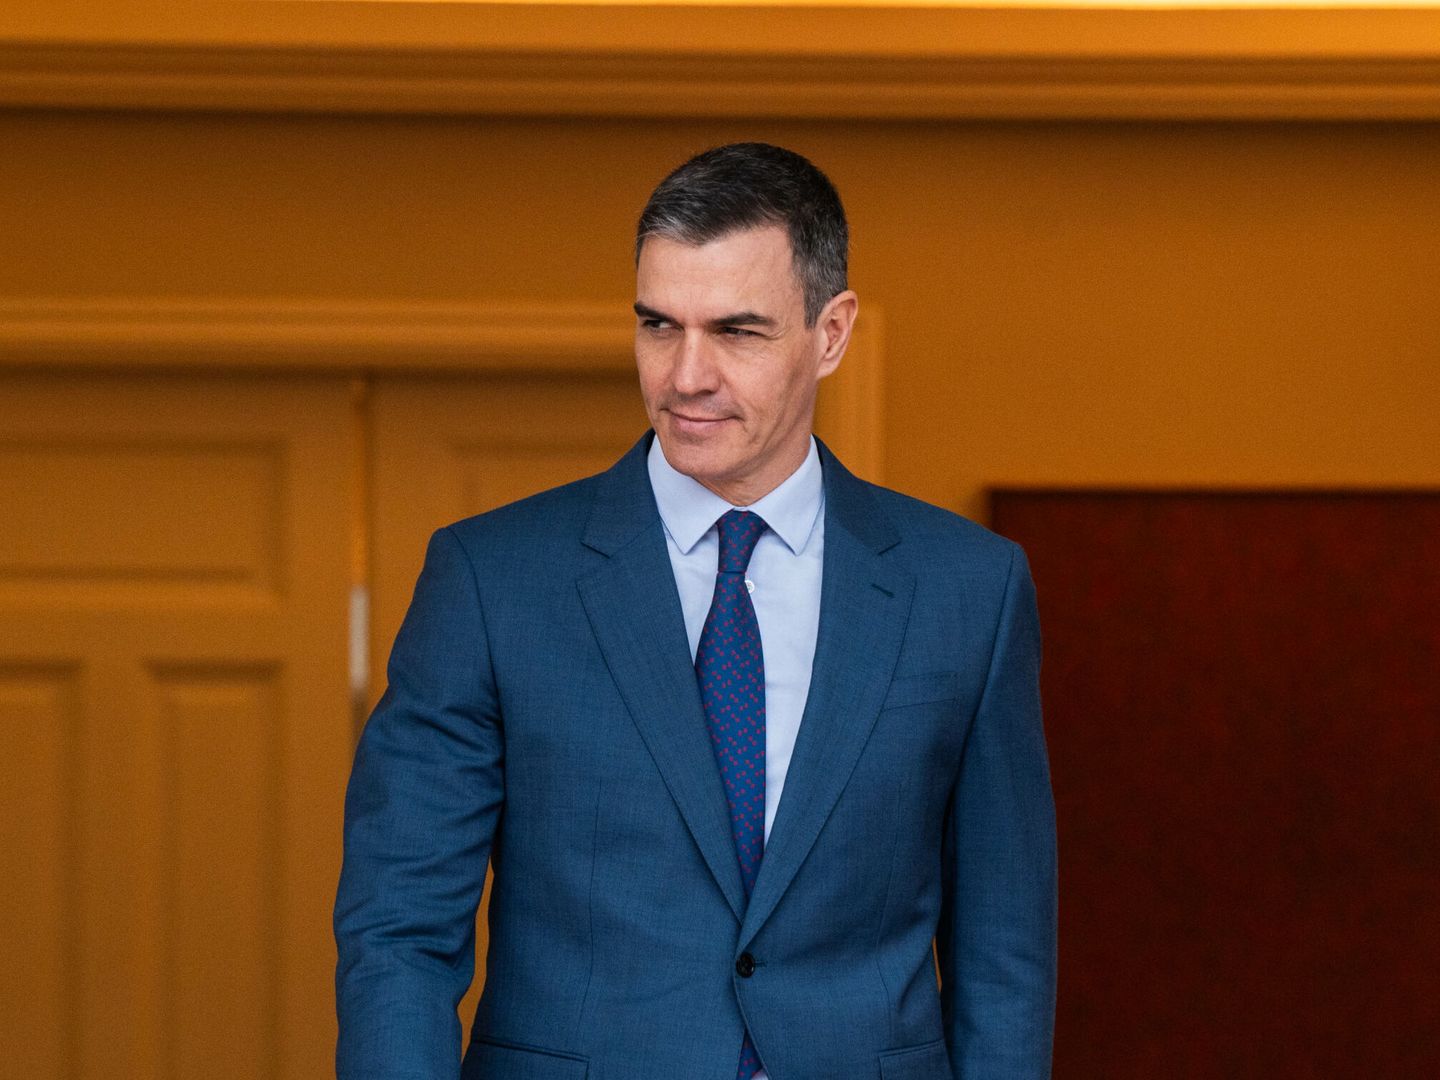 El presidente del Gobierno, Pedro Sánchez, en una imagen de febrero pasado. (Europa Press/Matias Chiofalo)